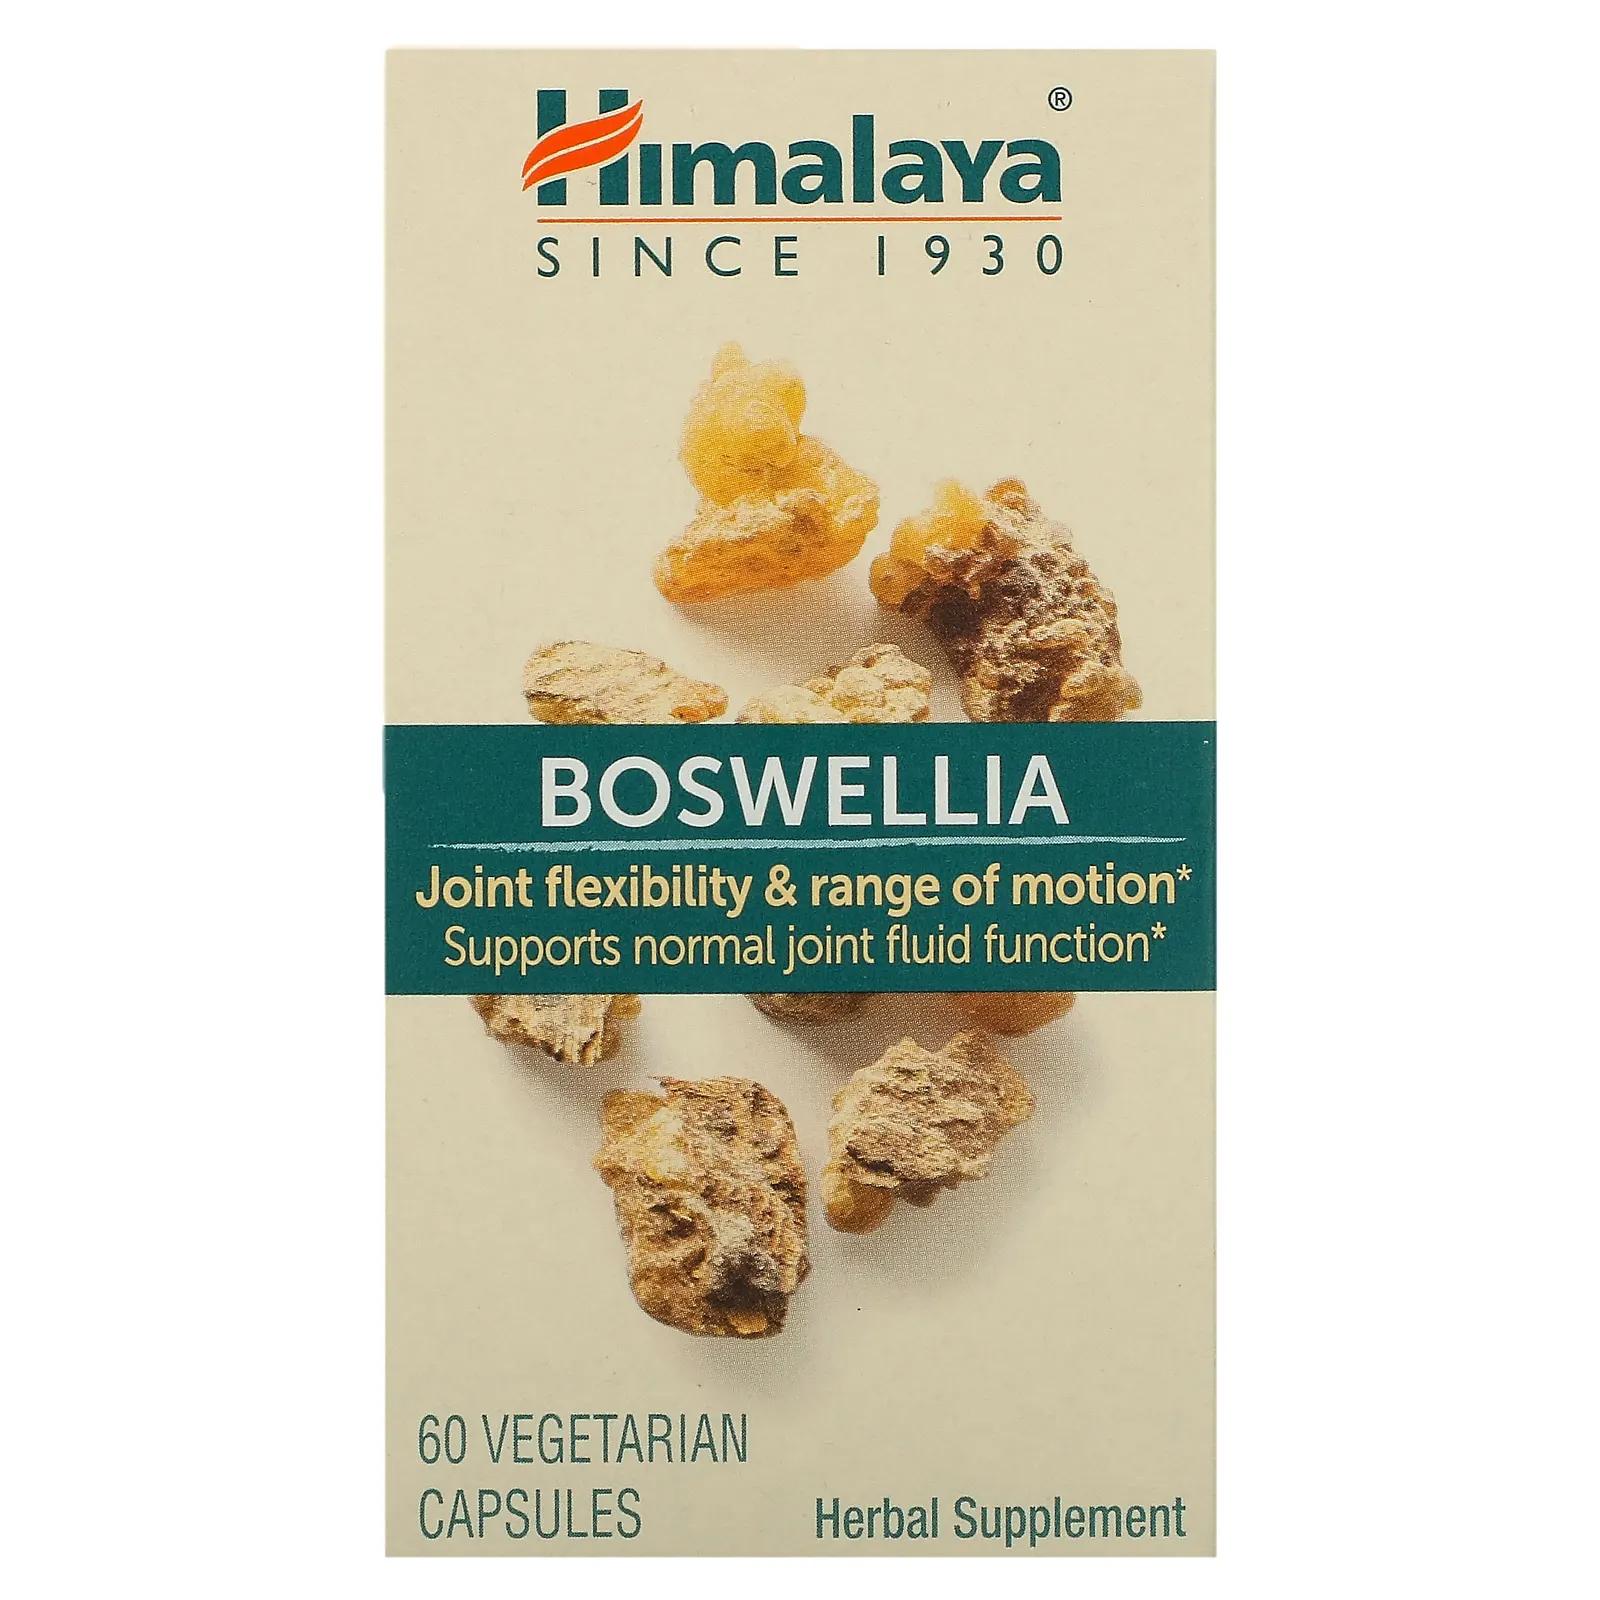 Himalaya Boswellia 60 вегетарианских капсул himalaya босвеллия 60 вегетарианских капсул